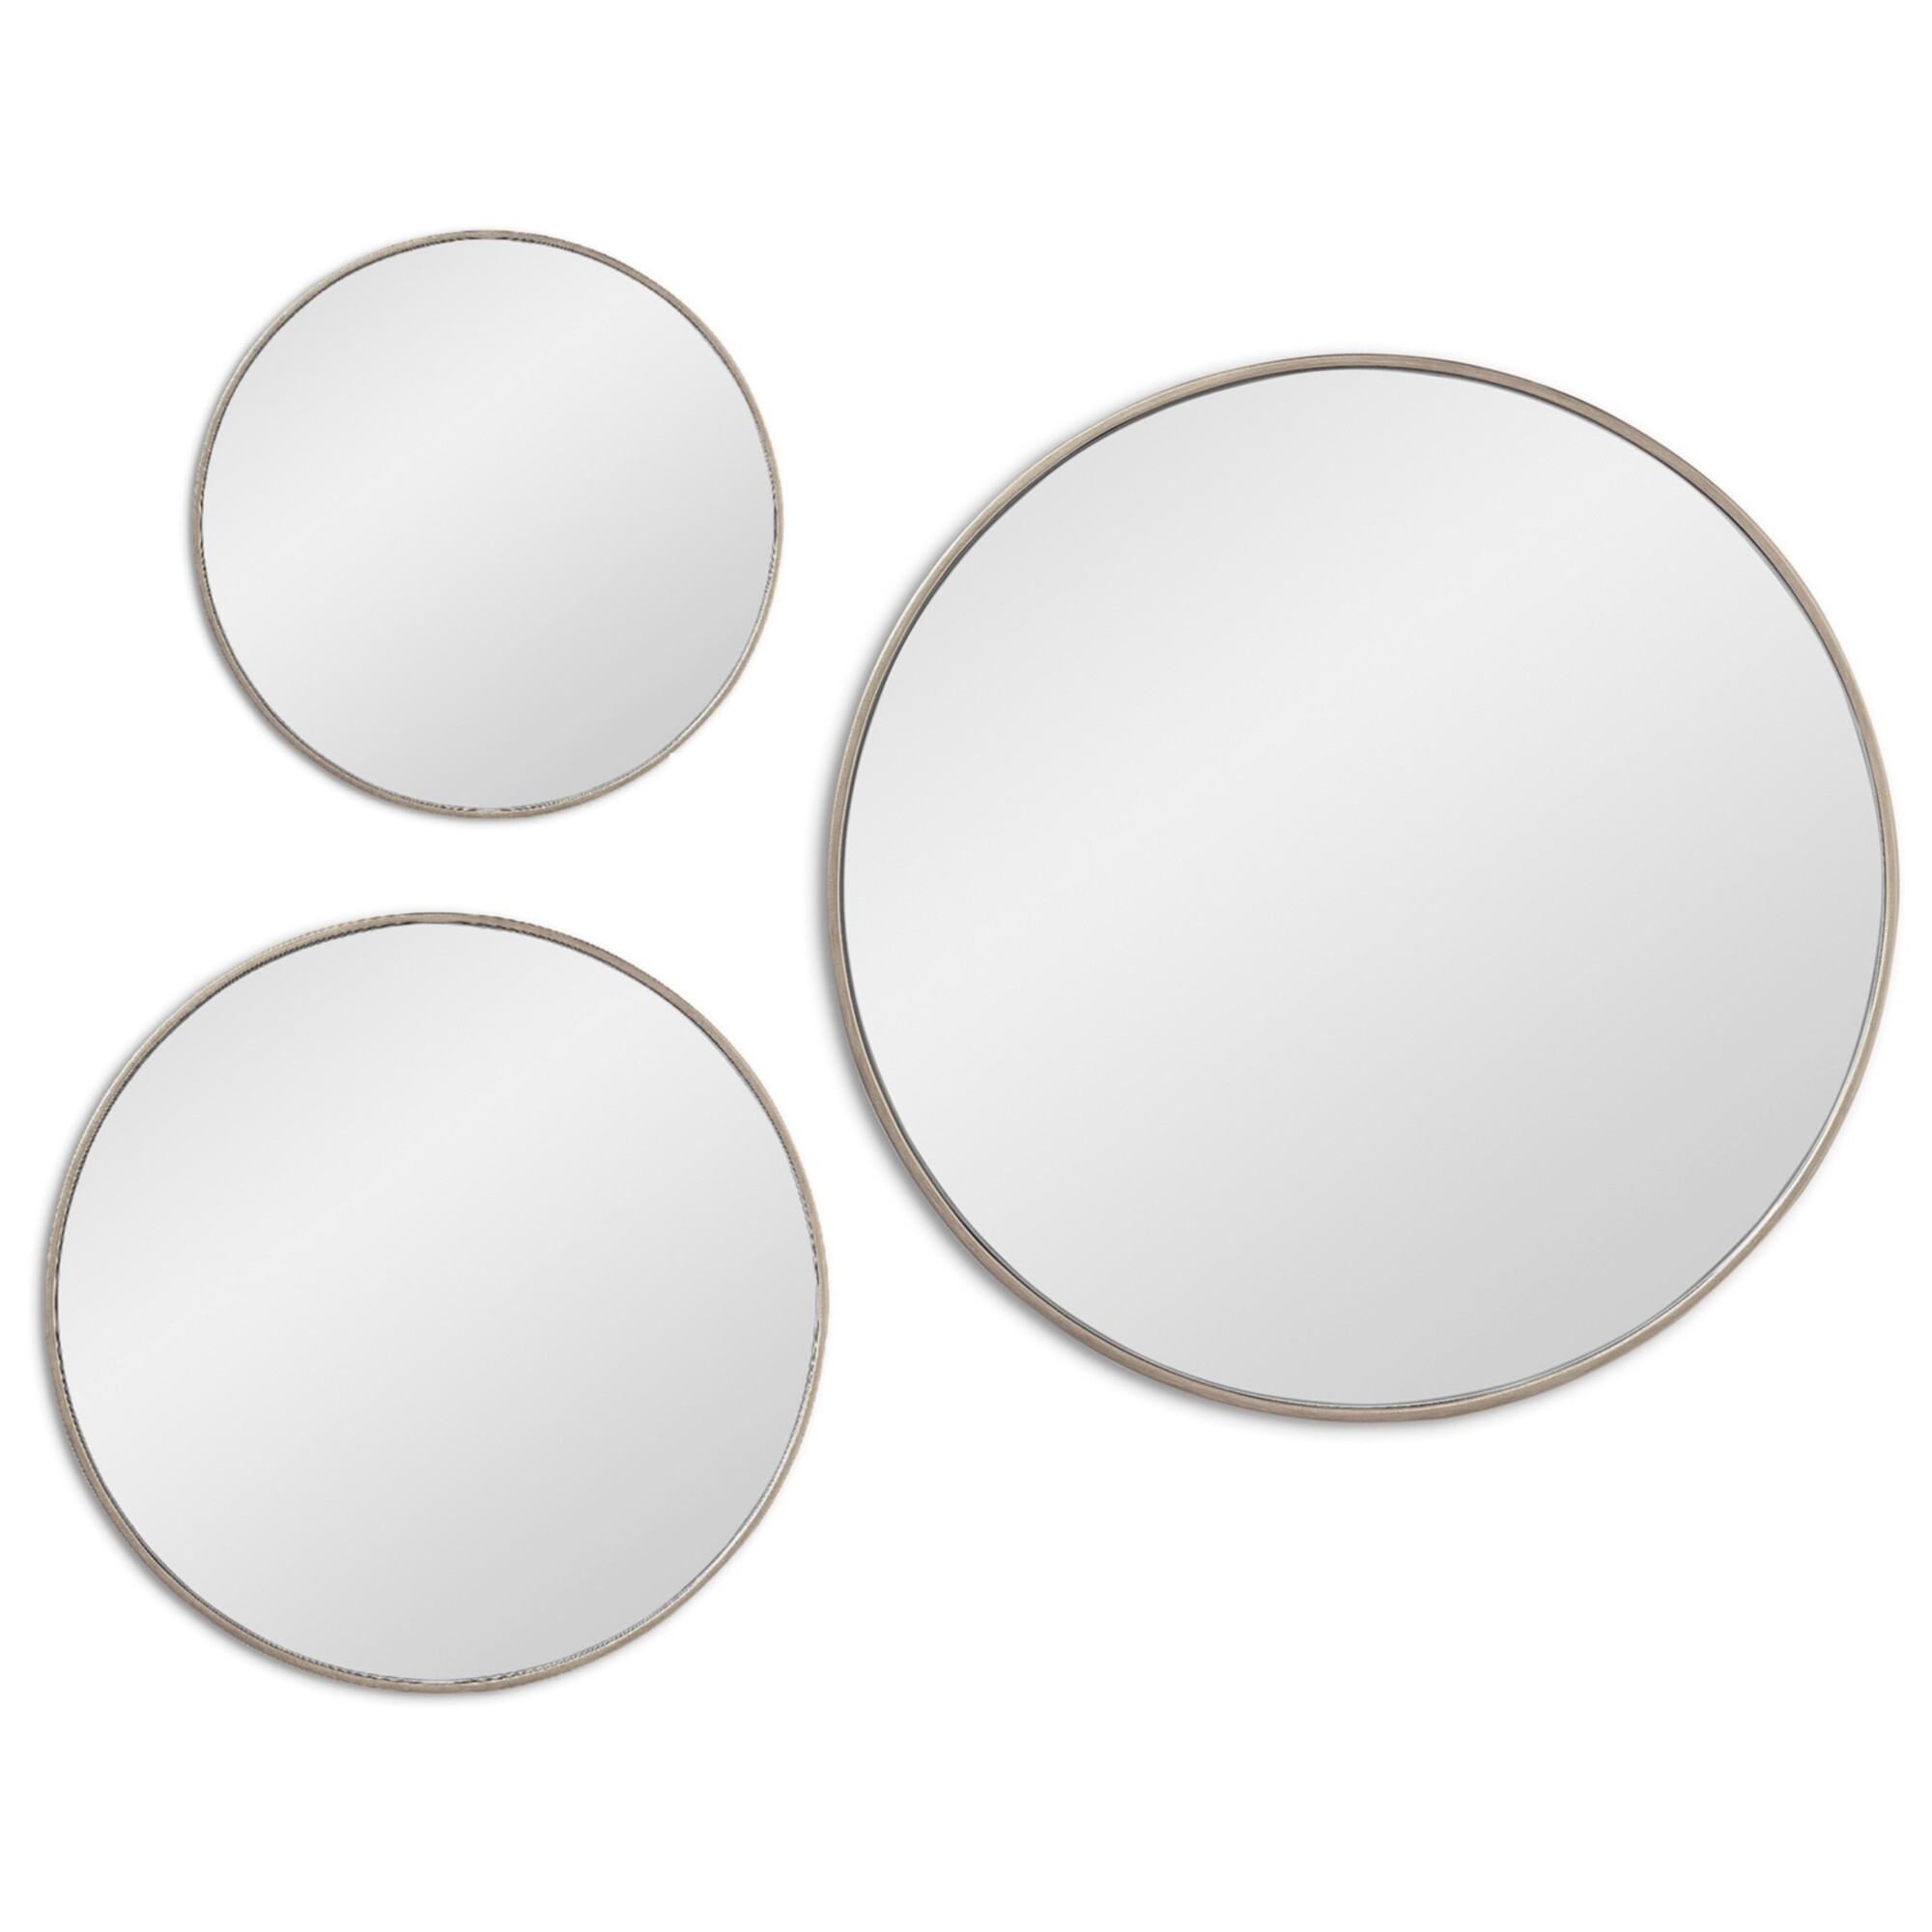 Зеркала настенные круглые в тонкой раме 3 шт серебро Saturn Silver